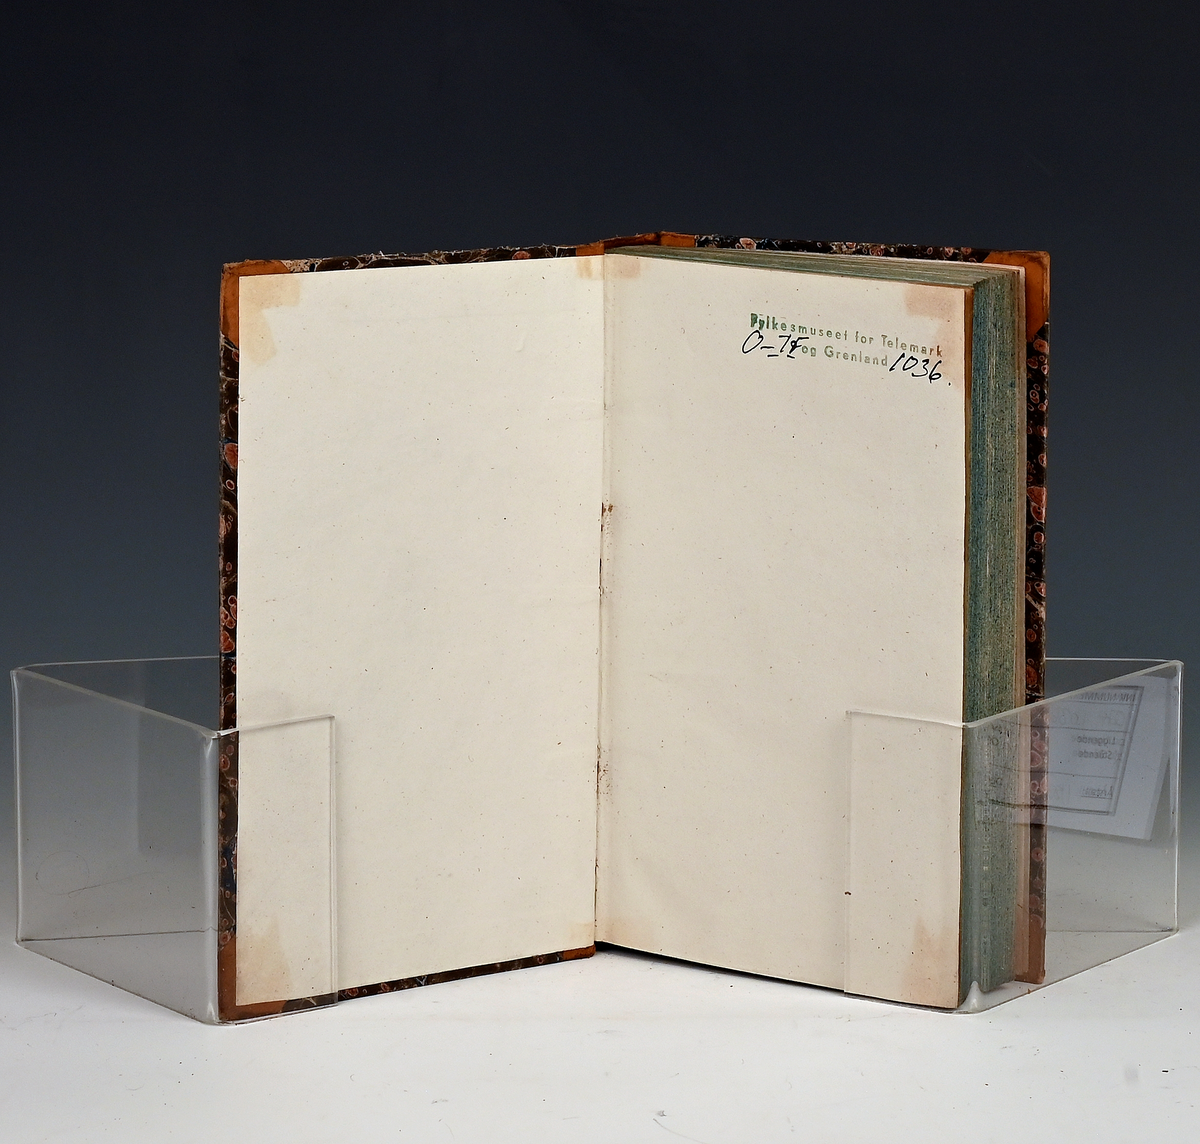 Maanedsskrift for litteratur. Trettende bind. Kbhv. 1835.